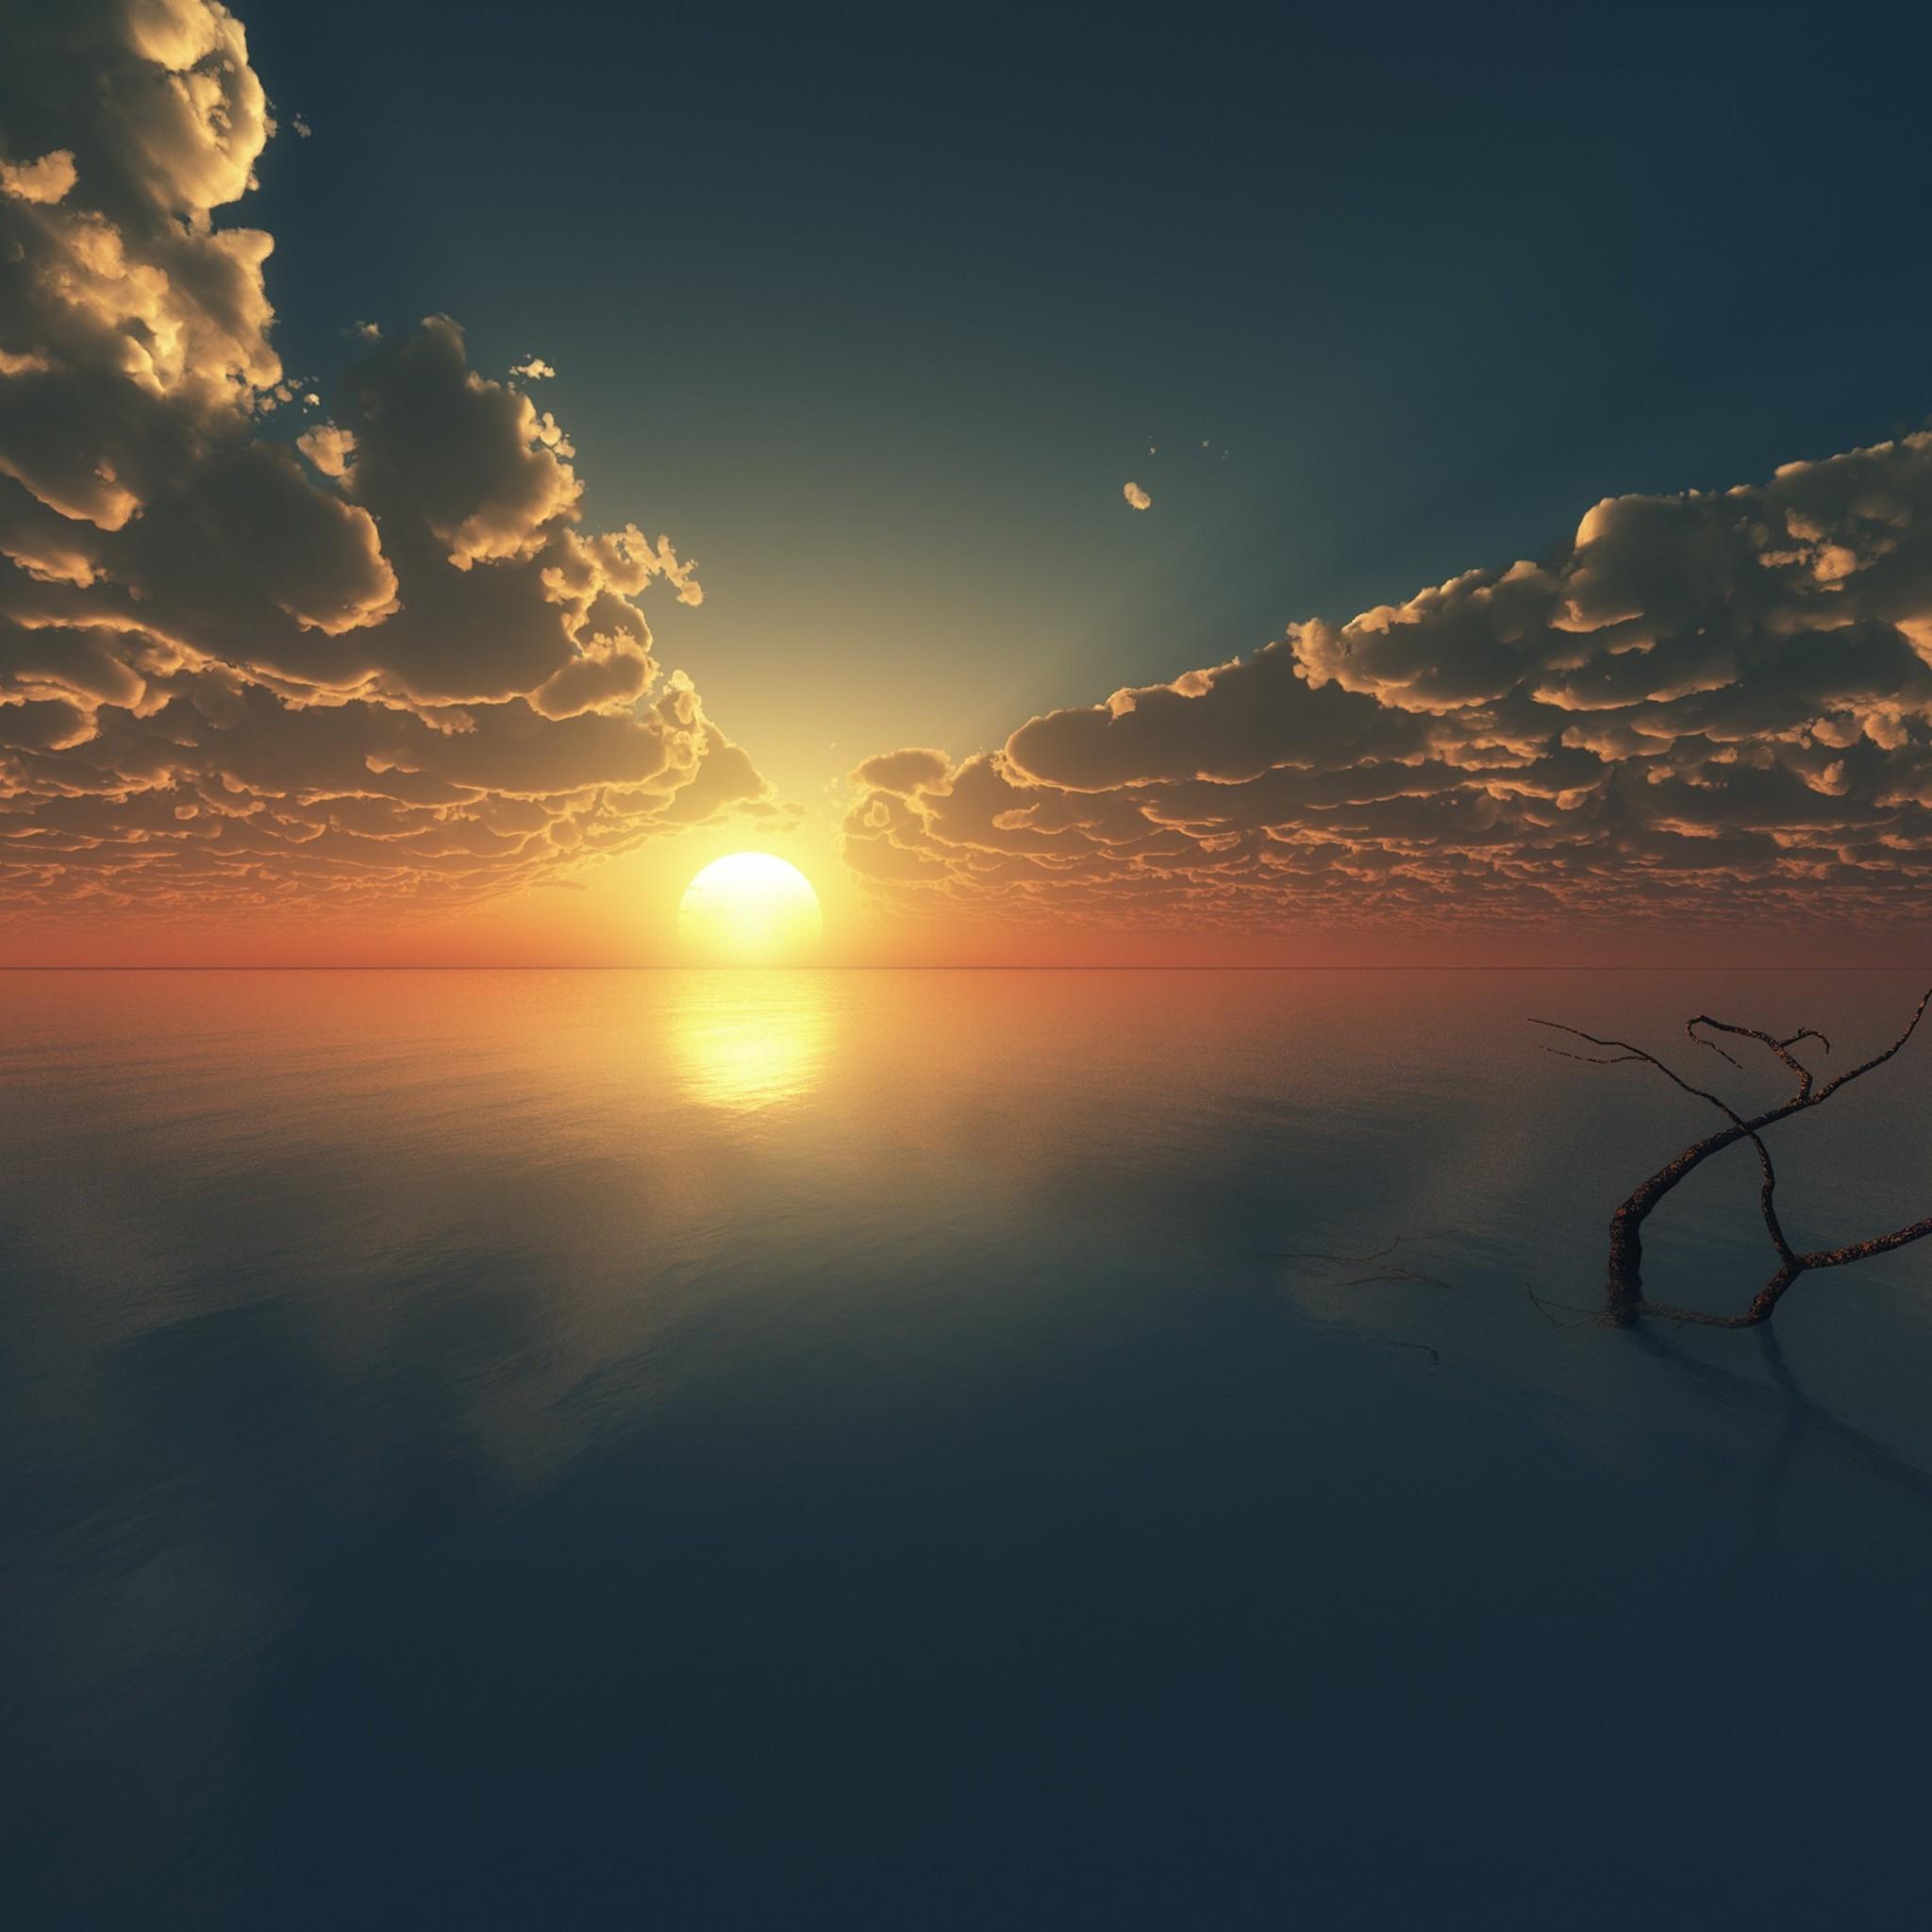 Sunset Reflections iPad Air HD 4k Wallpaper, Image